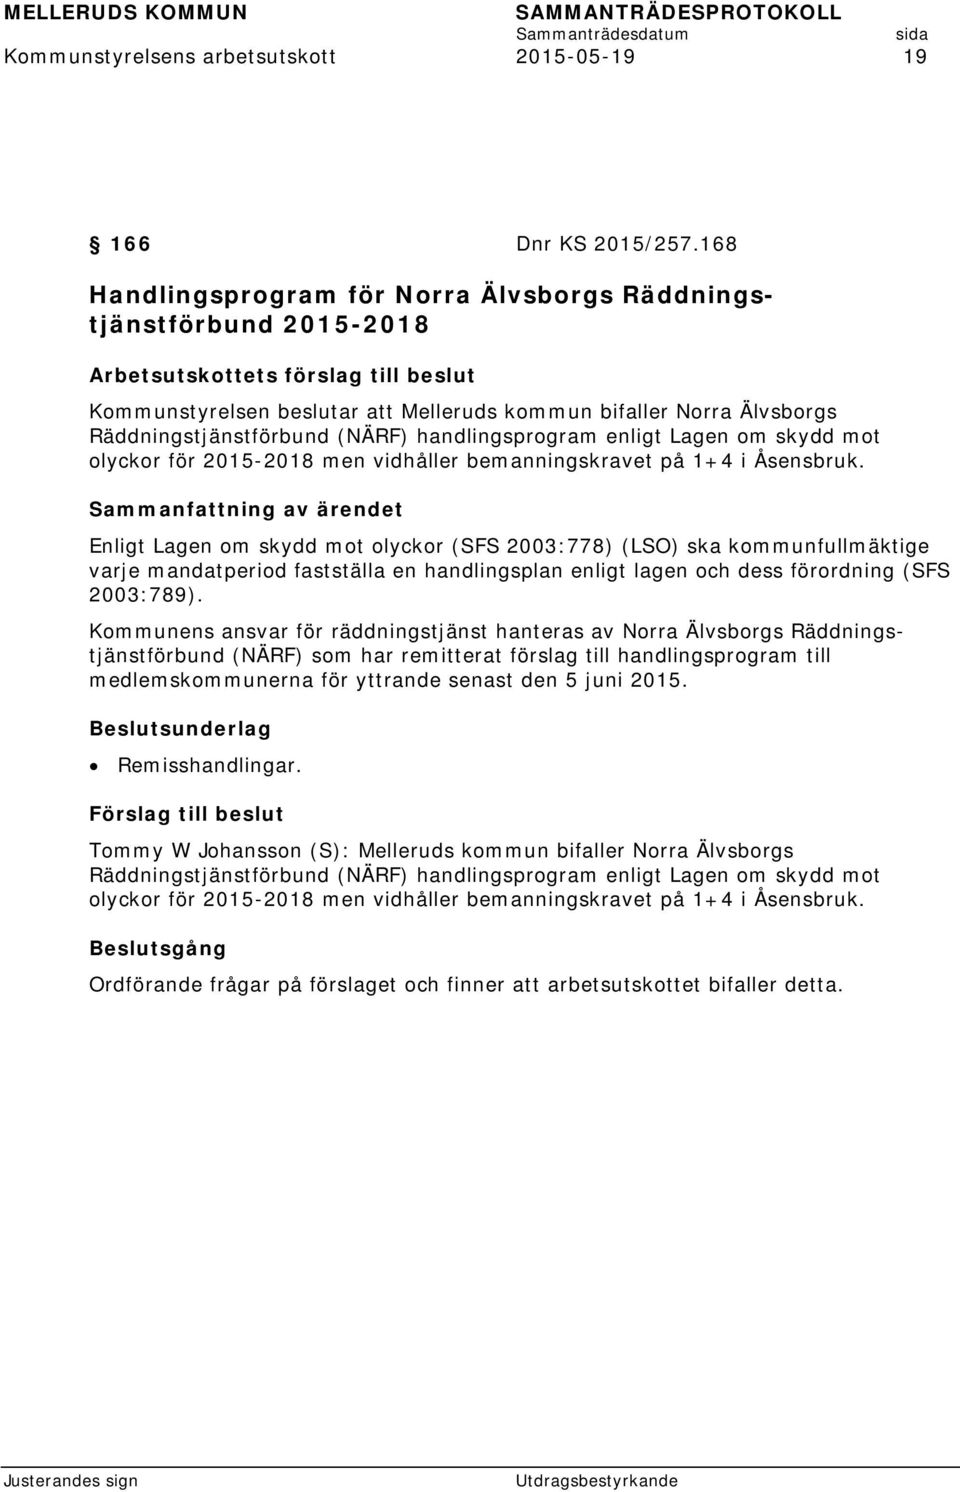 Räddningstjänstförbund (NÄRF) handlingsprogram enligt Lagen om skydd mot olyckor för 2015-2018 men vidhåller bemanningskravet på 1+4 i Åsensbruk.